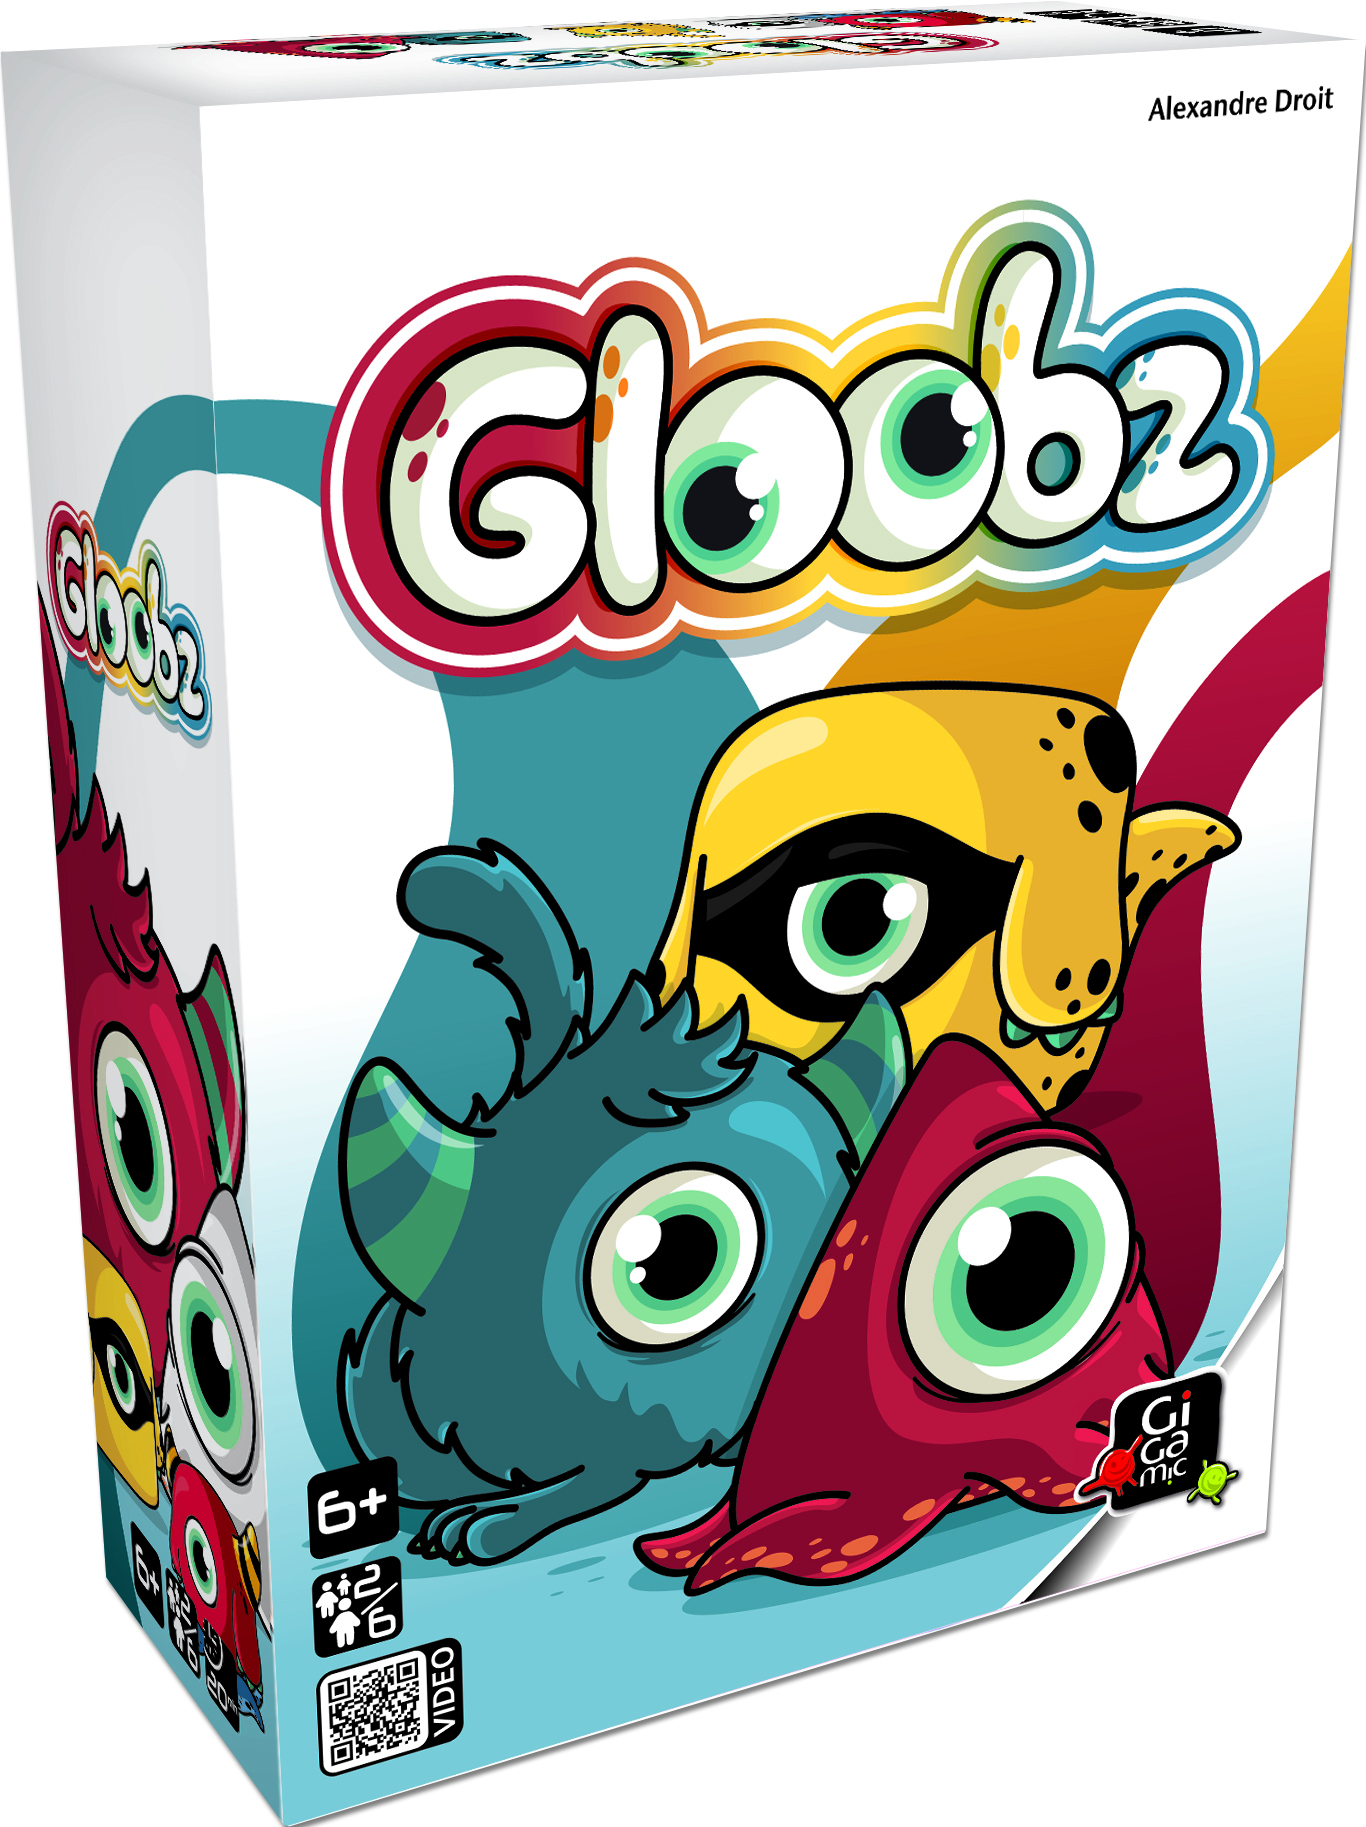 Boîte du jeu Gloobz